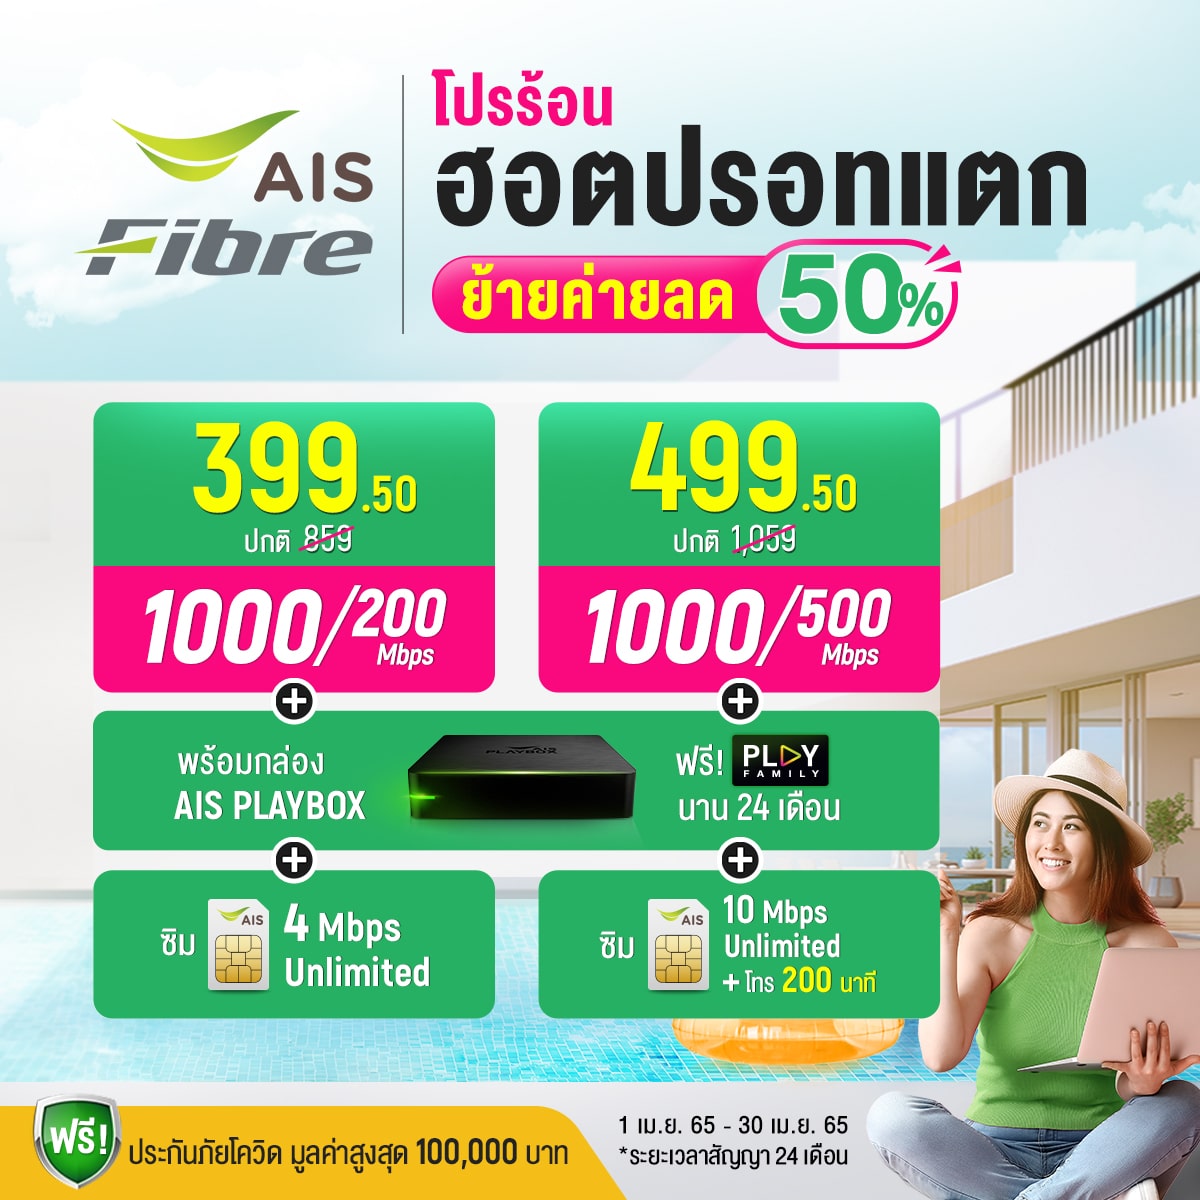 โปรย้ายค่ายเน็ตบ้าน ais fiber ย้ายค่าย AIS Fiber mesh wifi mini AIS Fibre AIS Fibre อินเตอร์เน็ตบ้าน เอไอเอส 399 บาท